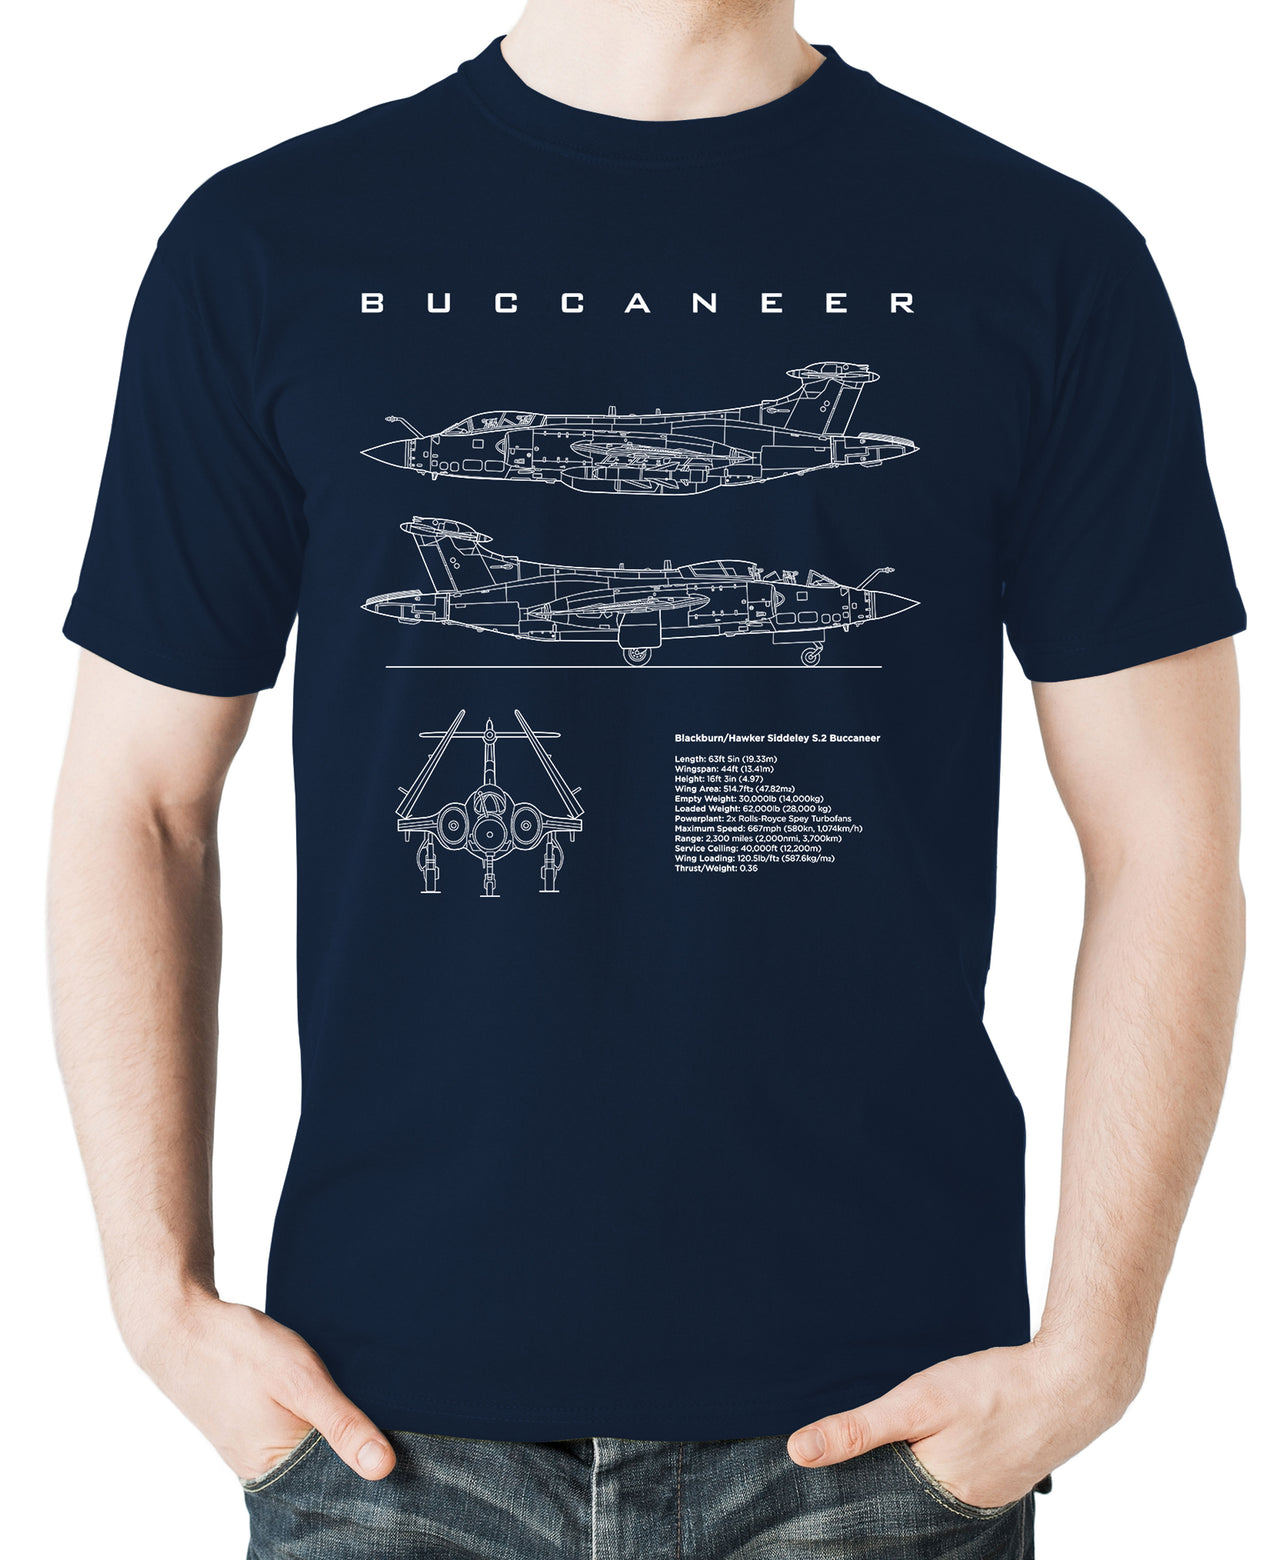 Buccaneer - T-shirt